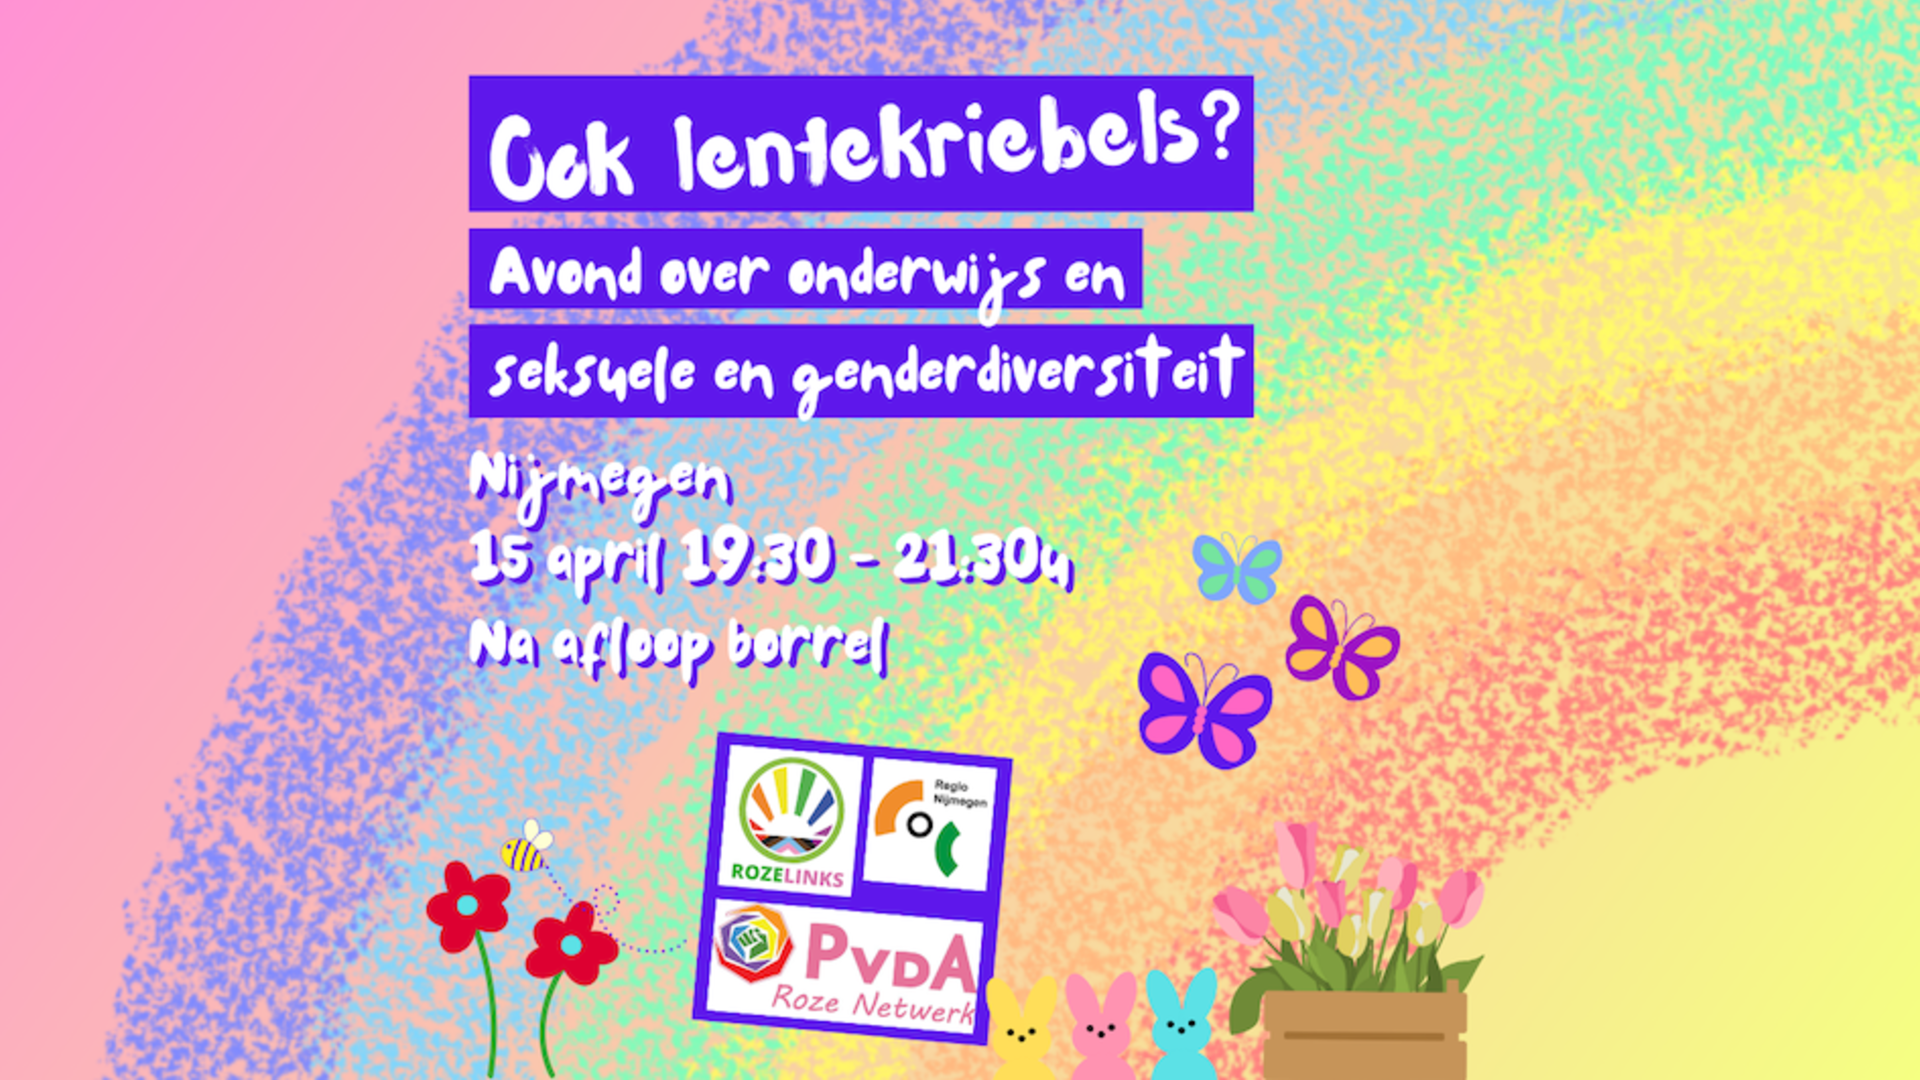 Avond over seksuele en genderdiversiteit in onderwijs, afbeelding met regenboog, vlinders, konijntjes, bloemen en bijtje en aankondigingstekst